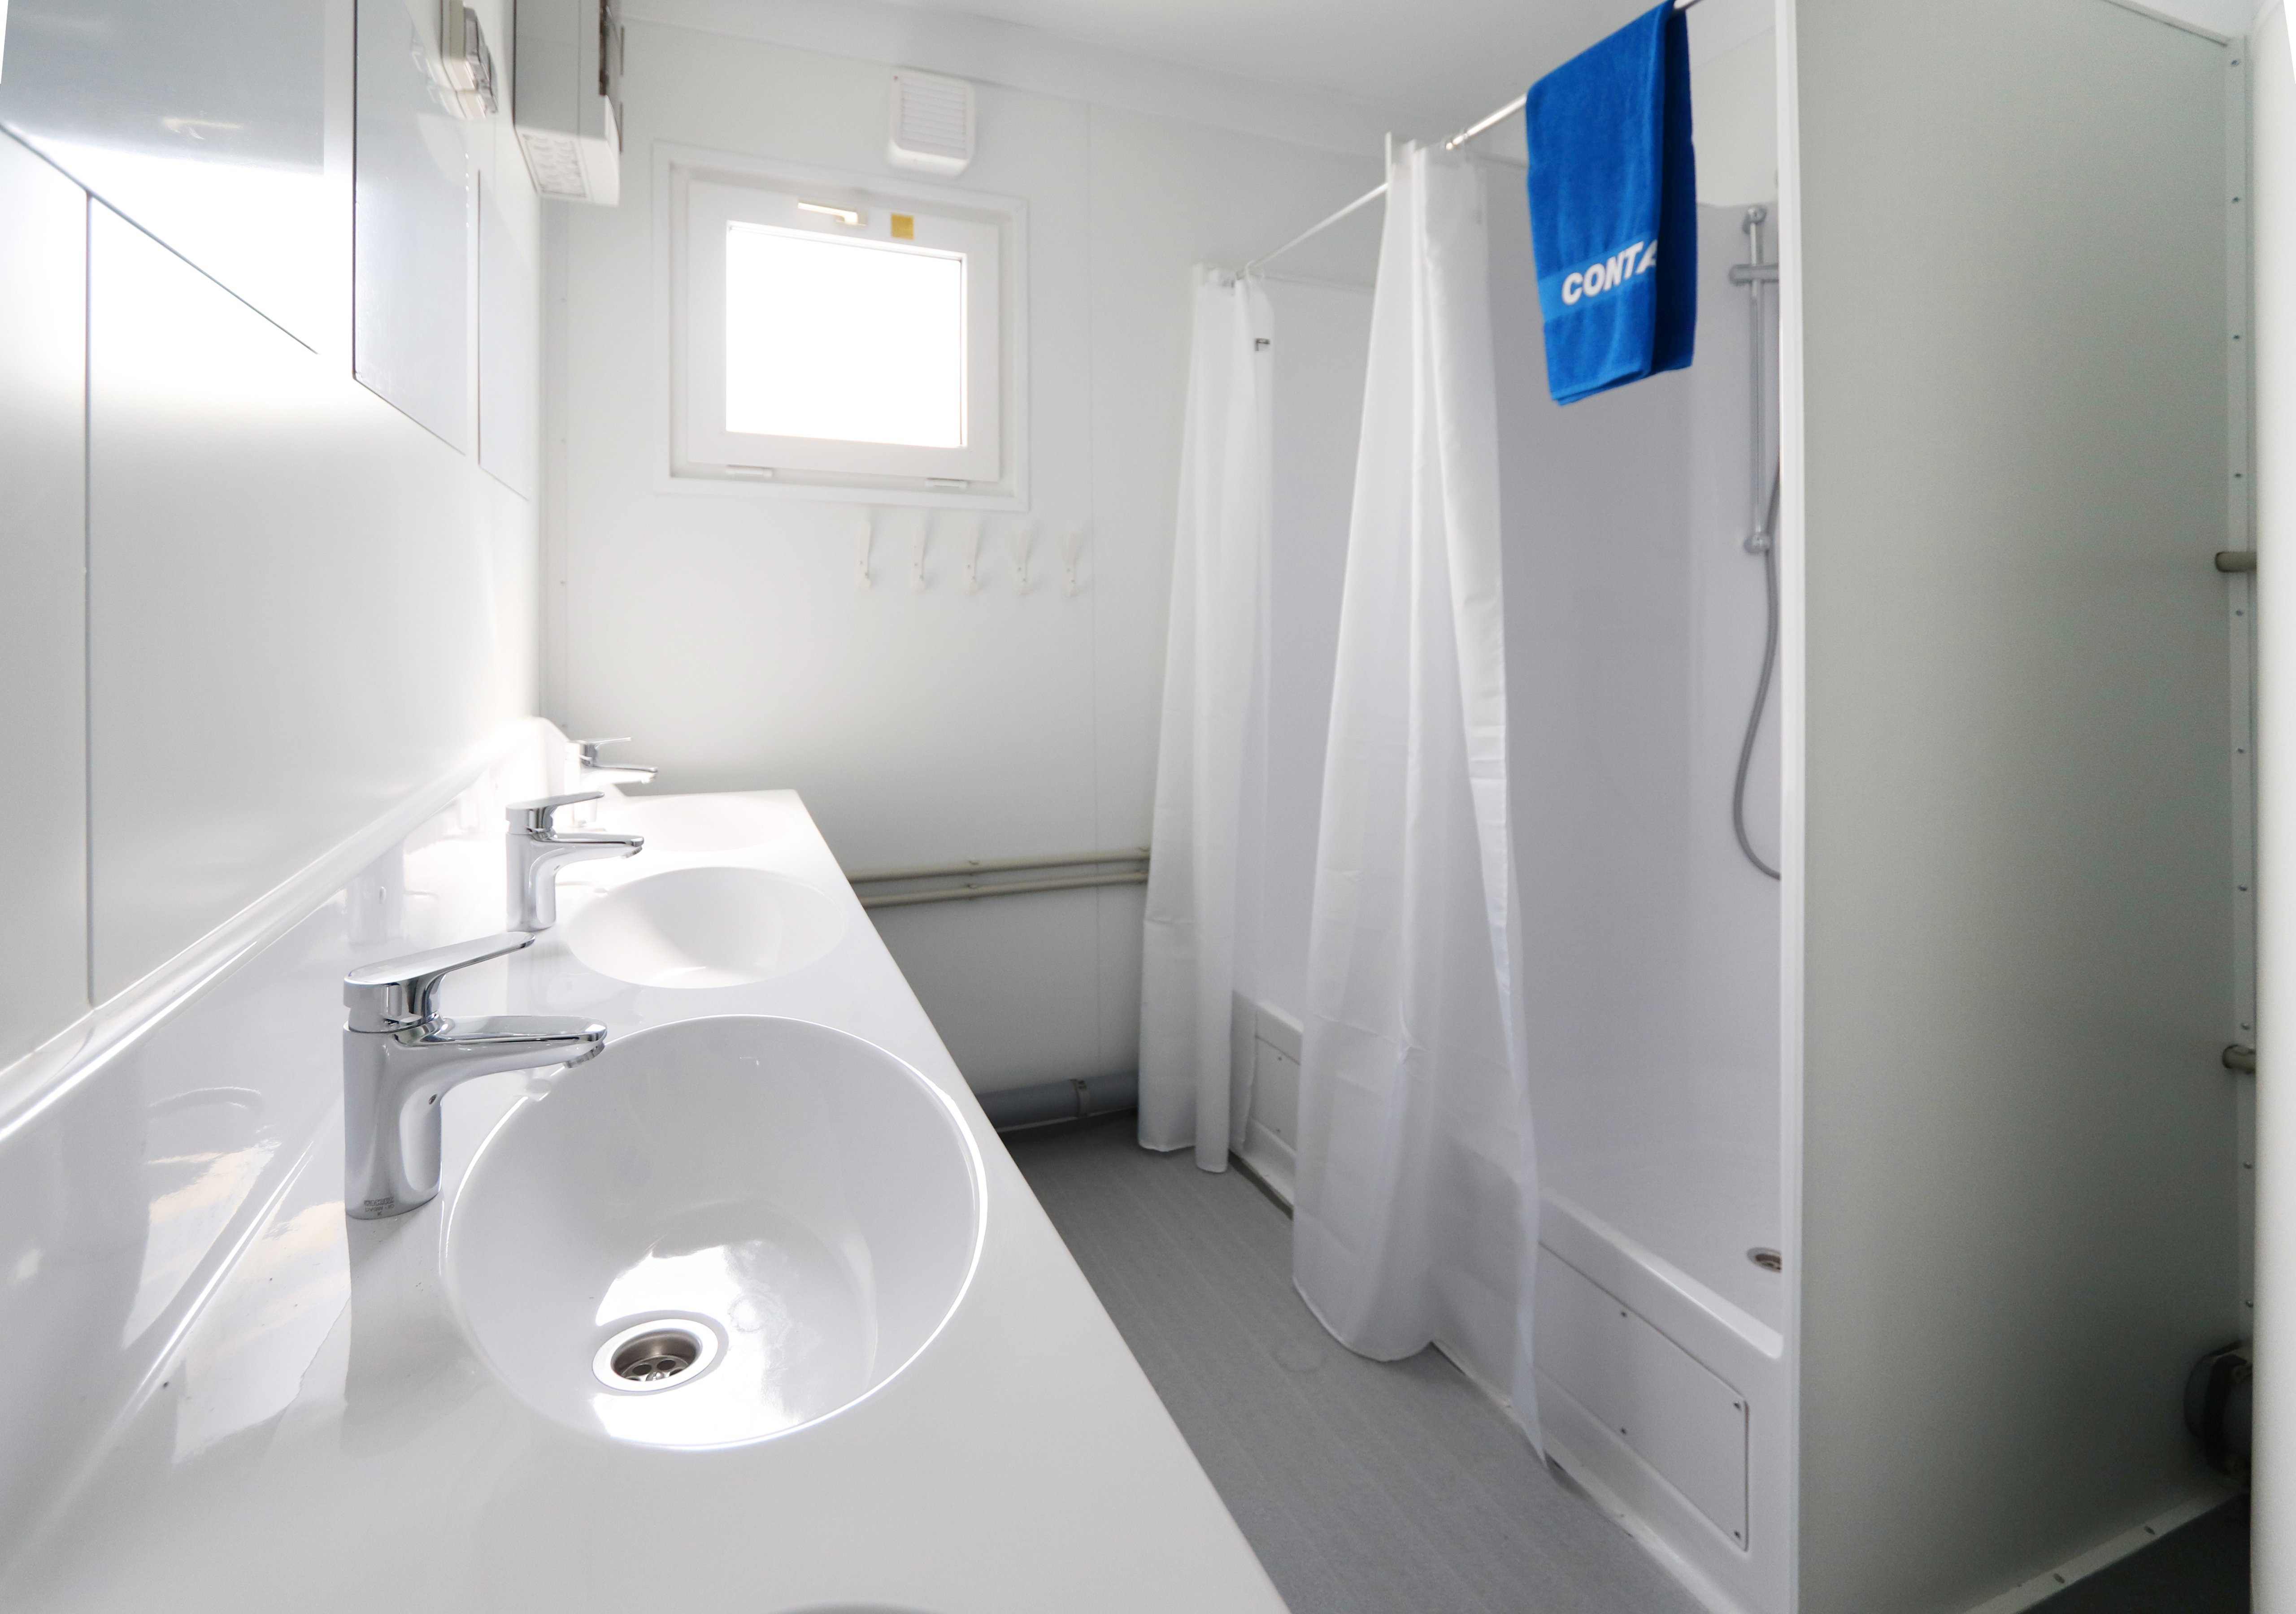 Hyr duschmodul och säkerställ komfort och hygien